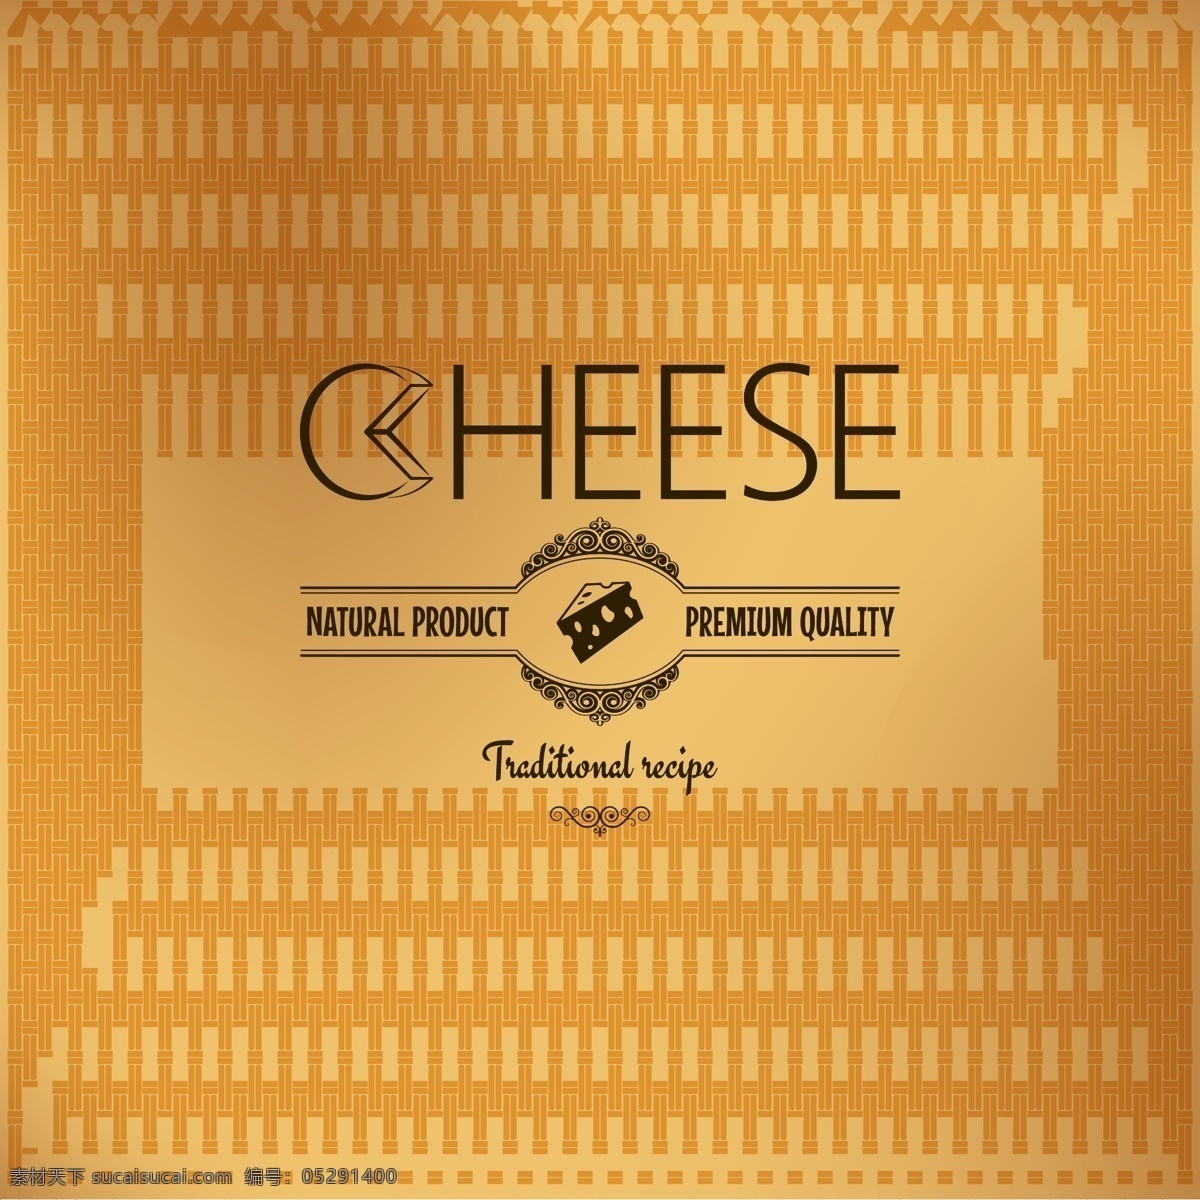 简约 奶酪 宣传 矢量 矢量素材 设计素材 背景素材